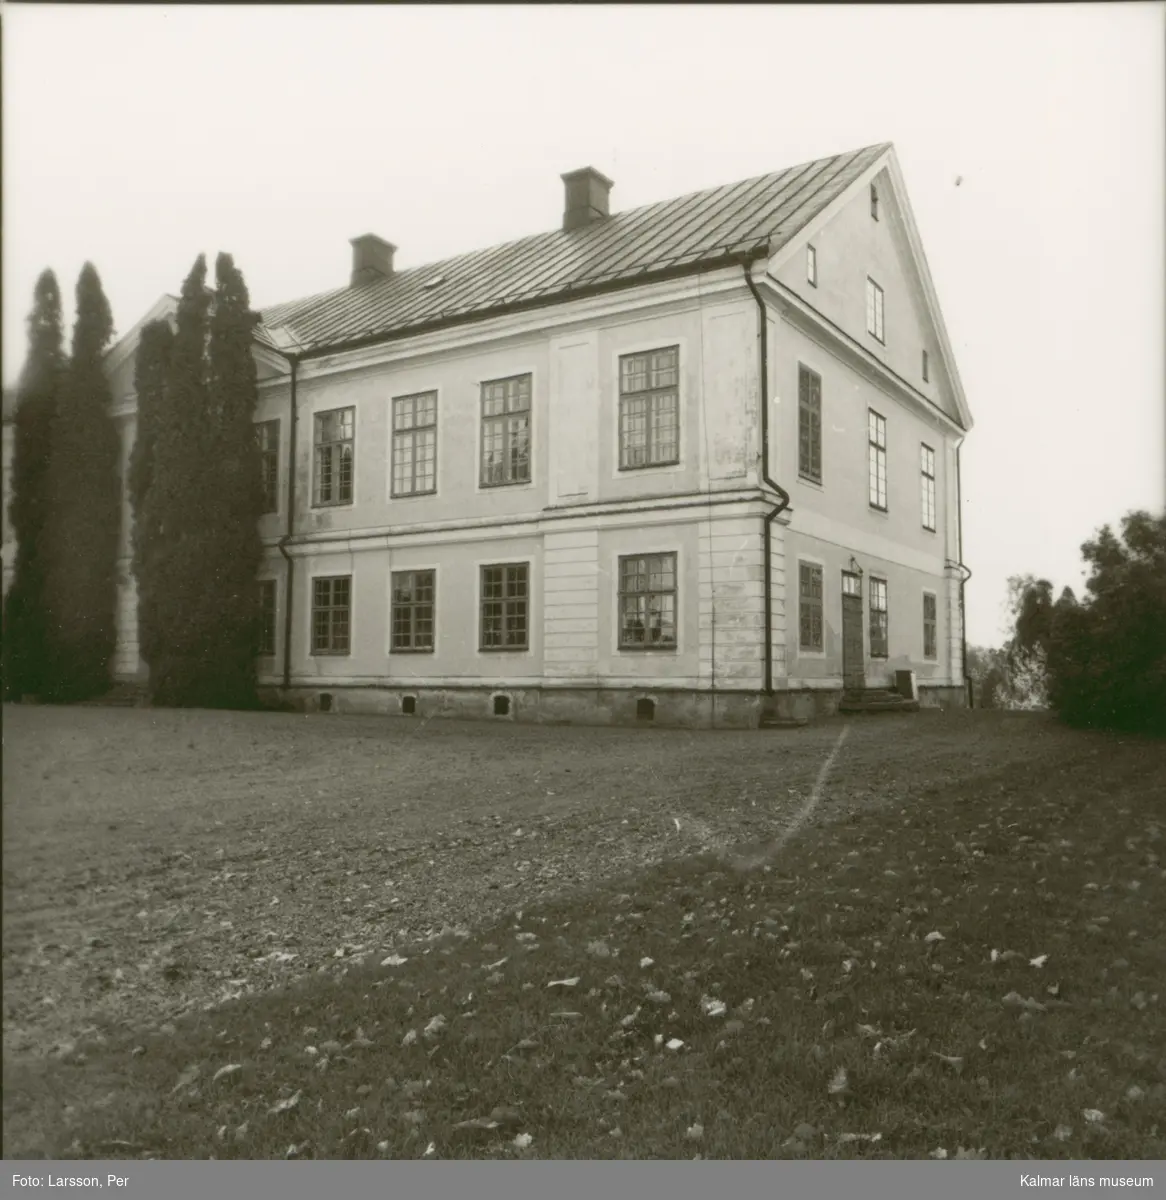 Odensviholms herrgård, sedd från entrésidan.